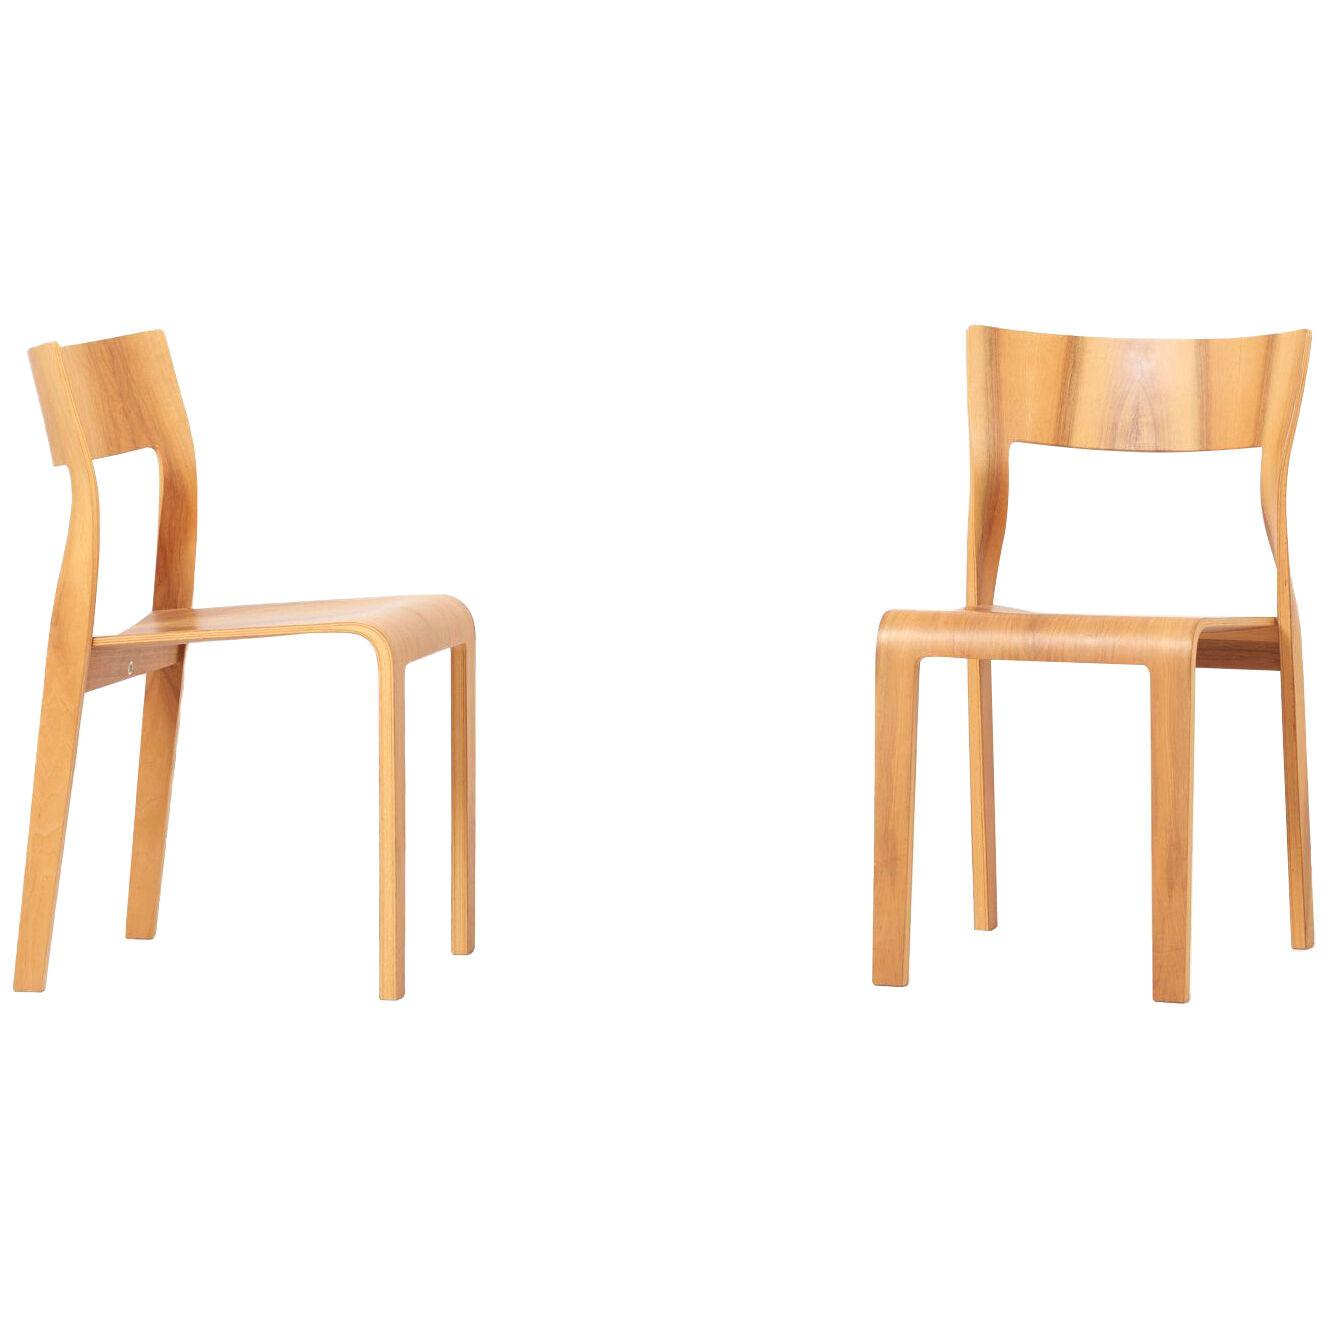 Pair of "Torsio" Chairs by Röthlisberger, Switzerland	